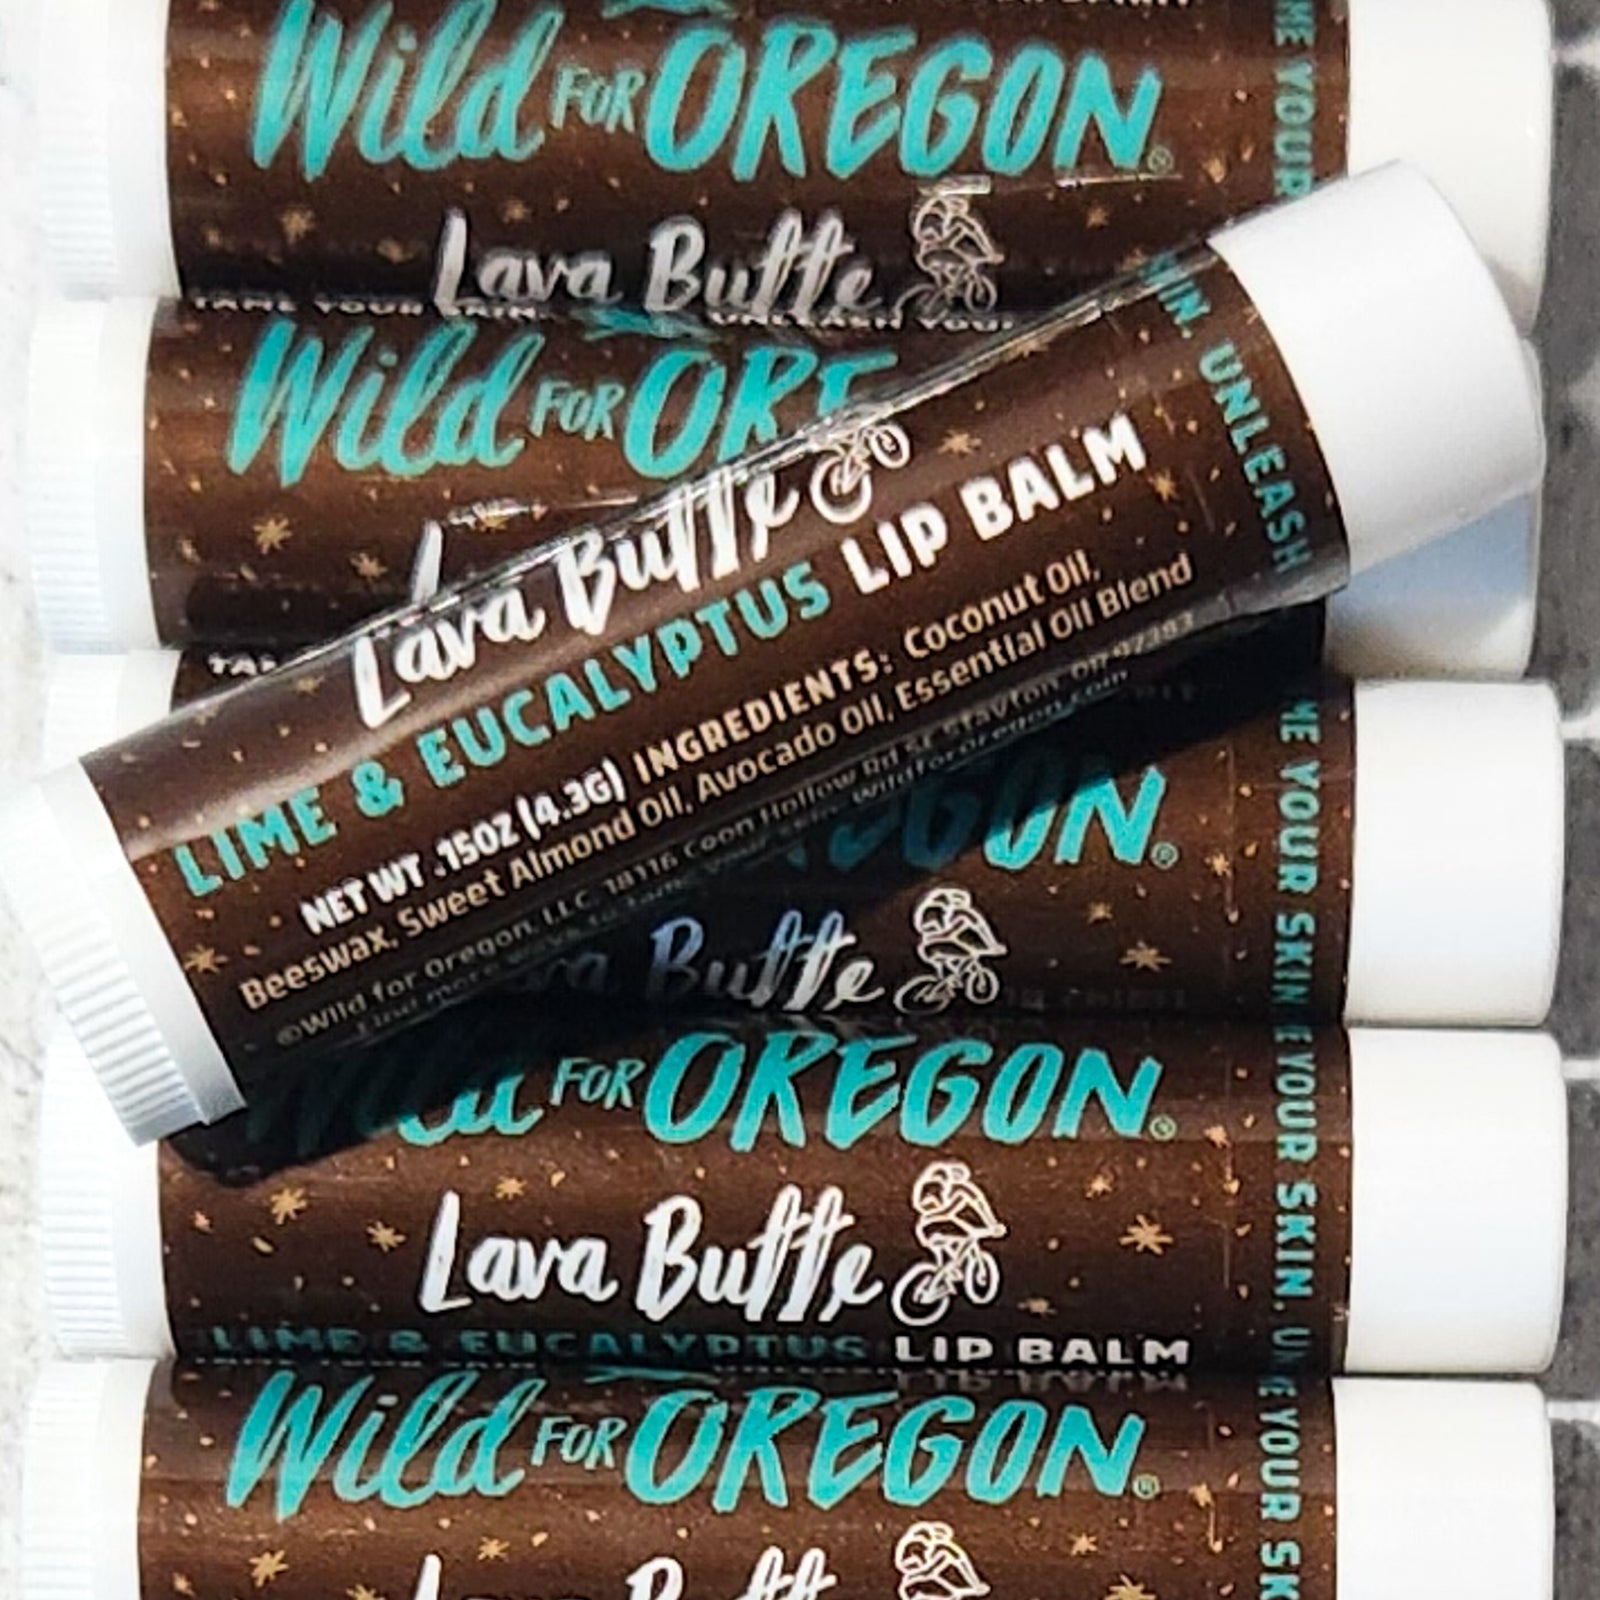 Oregon Trail Wild Cherry Lip Balm Flavor Oil – Oregon Trail Soapers Supply